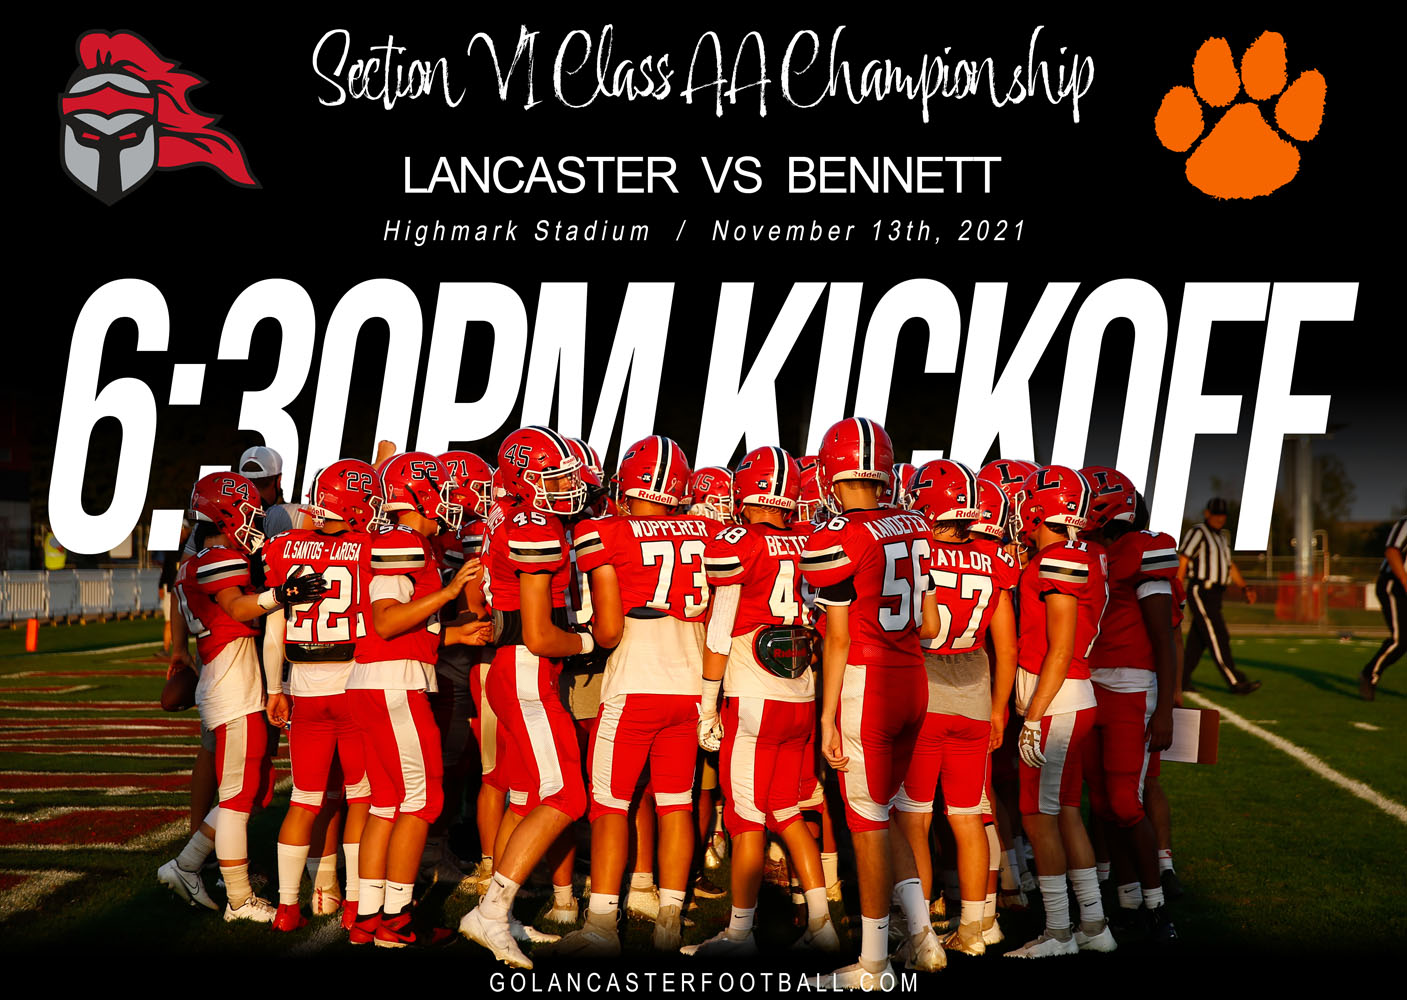 Kickoff for Lancaster vs Bennett Section VI Championship Game